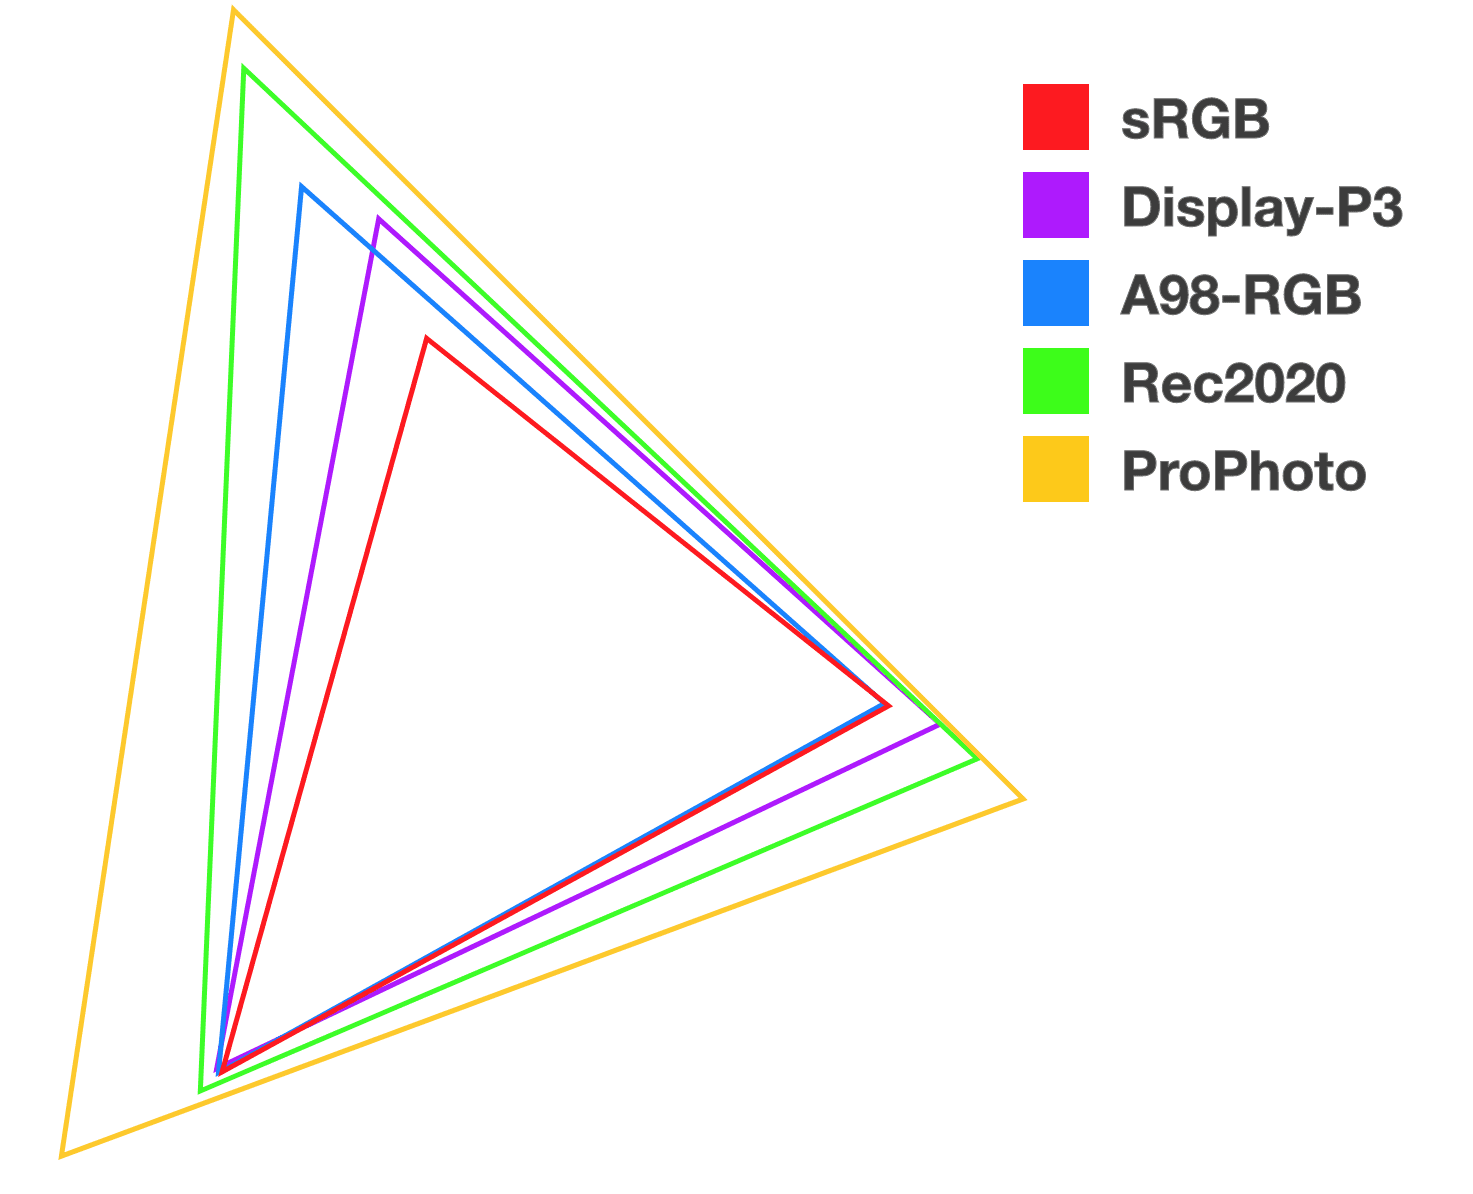 สามเหลี่ยมซ้อน 5 อันที่มีสีต่างกันจะช่วยแสดงความสัมพันธ์และขนาดของพื้นที่สีใหม่แต่ละพื้นที่